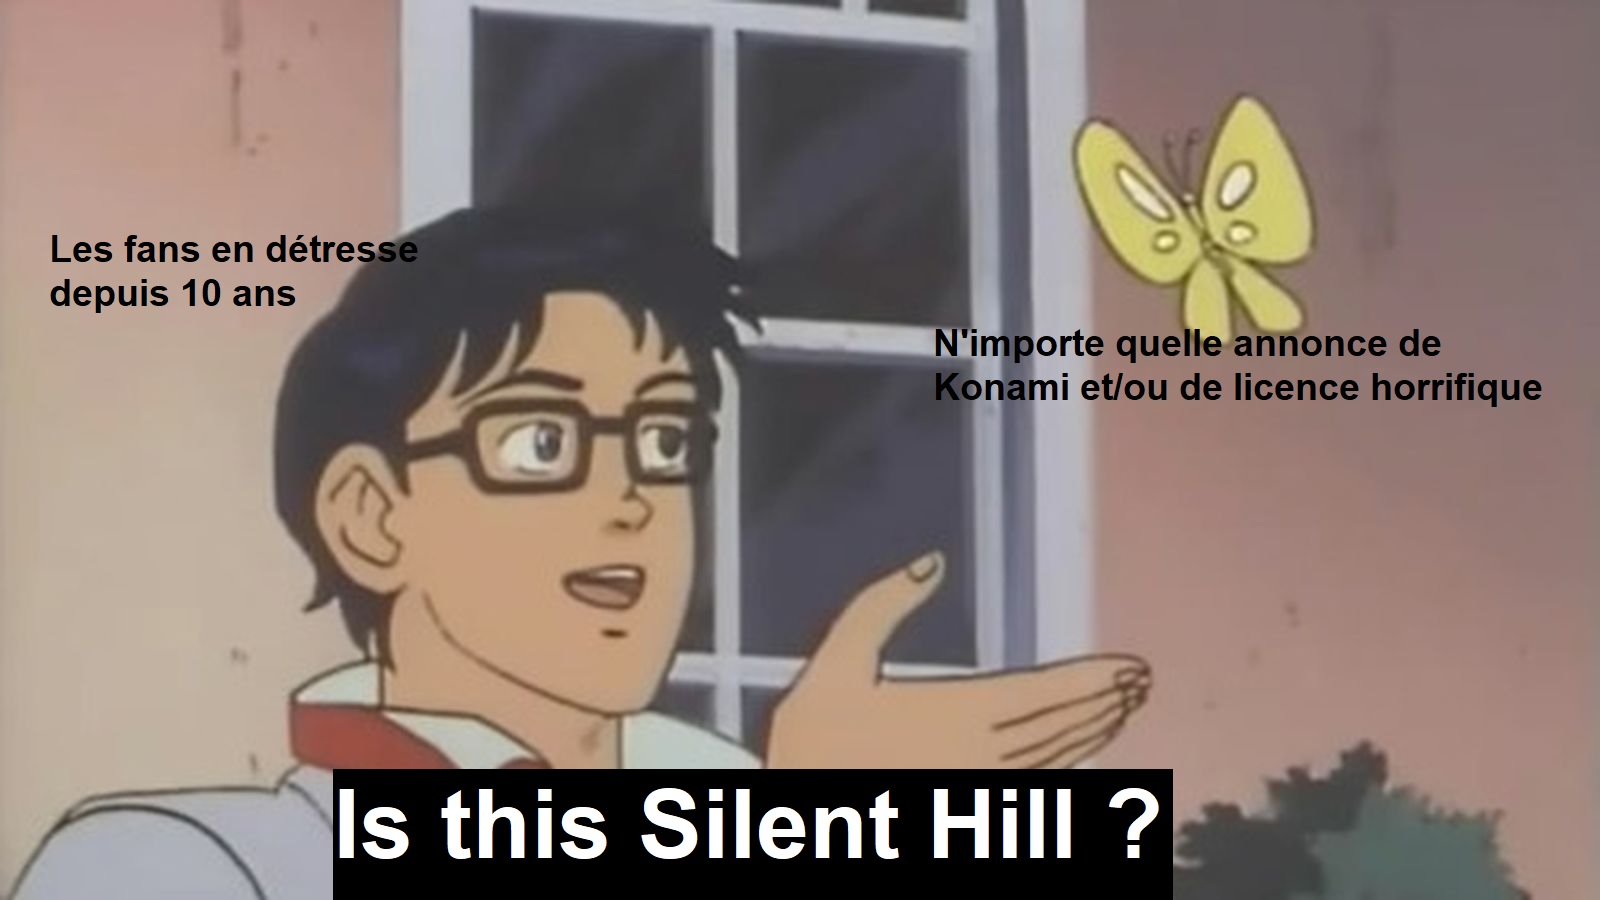 meme avec le papillon is this silent hill pour les fans de Konami